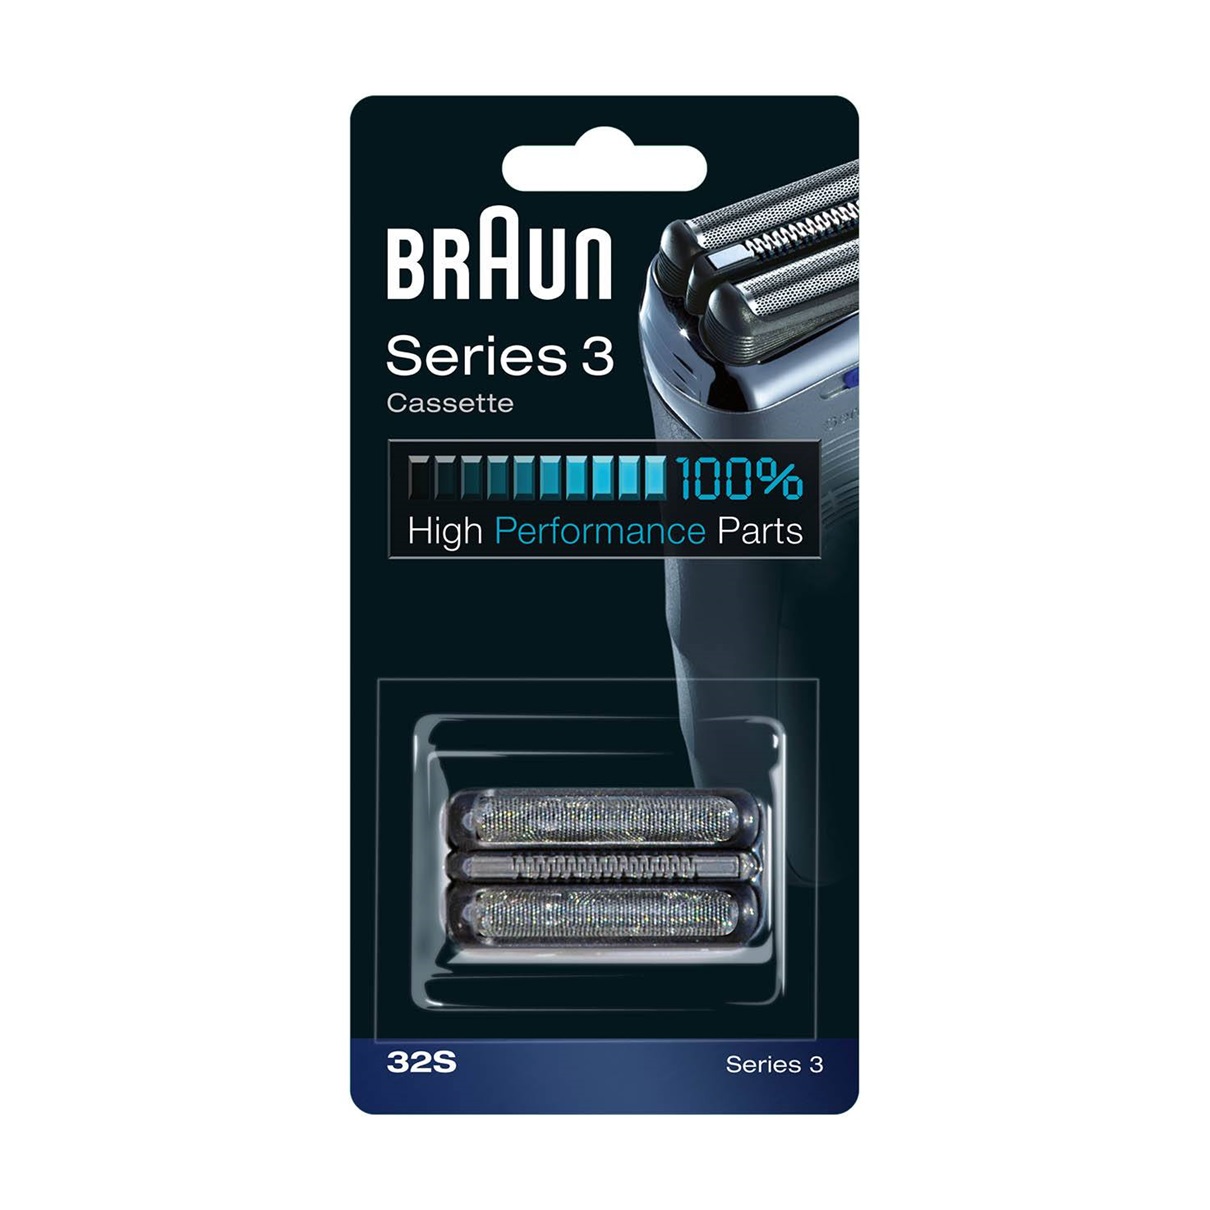 сетка и режущий блок для бритв braun 11b Сетка и режущий блок для бритв Braun 32S